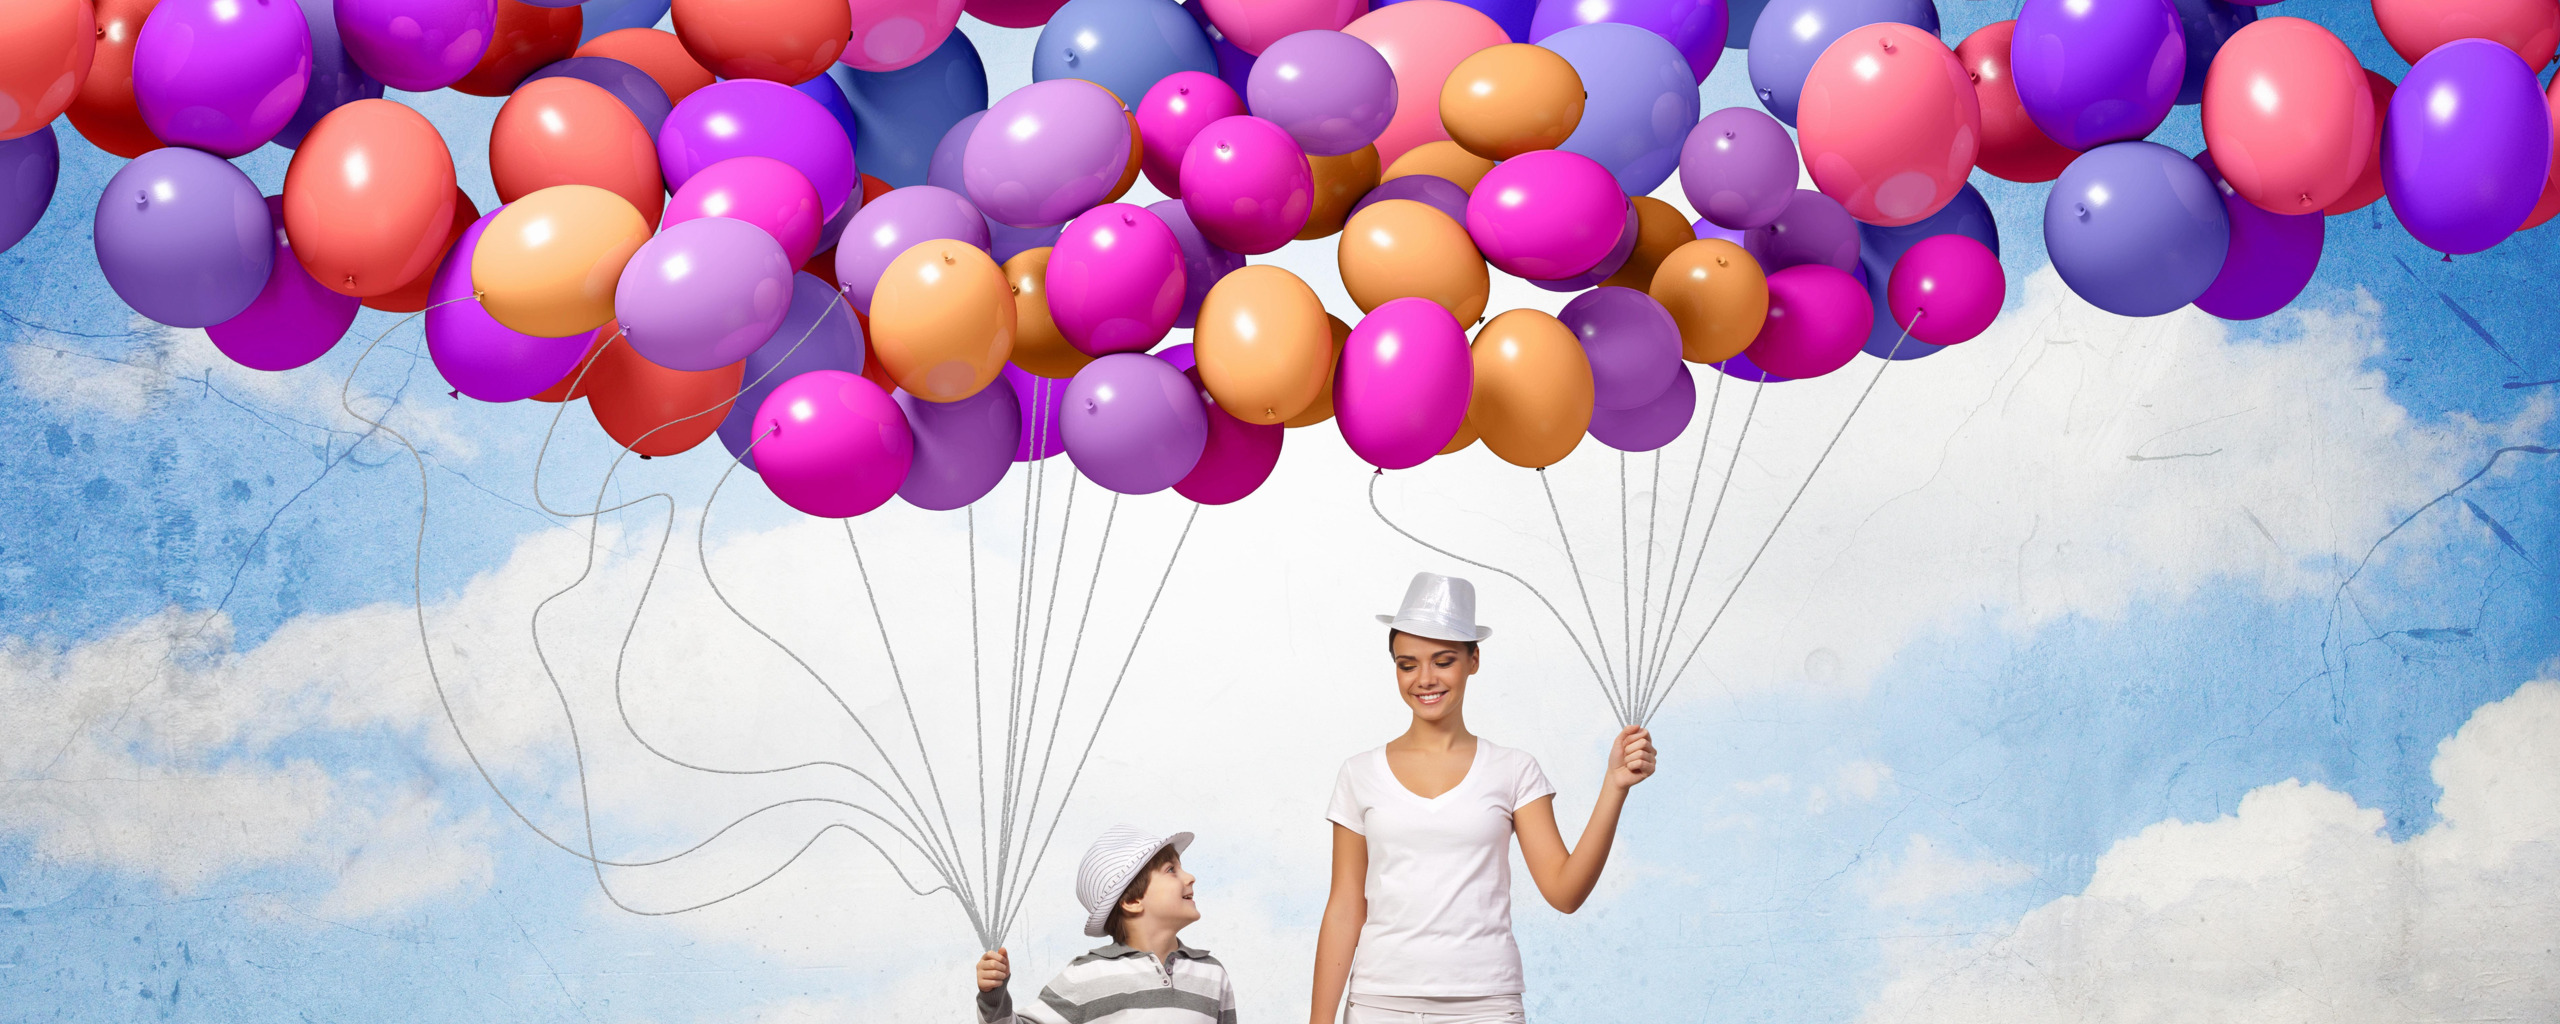 Воздушные шары. Фон с воздушными шарами. Воздушный шар. Баннер с шарами.